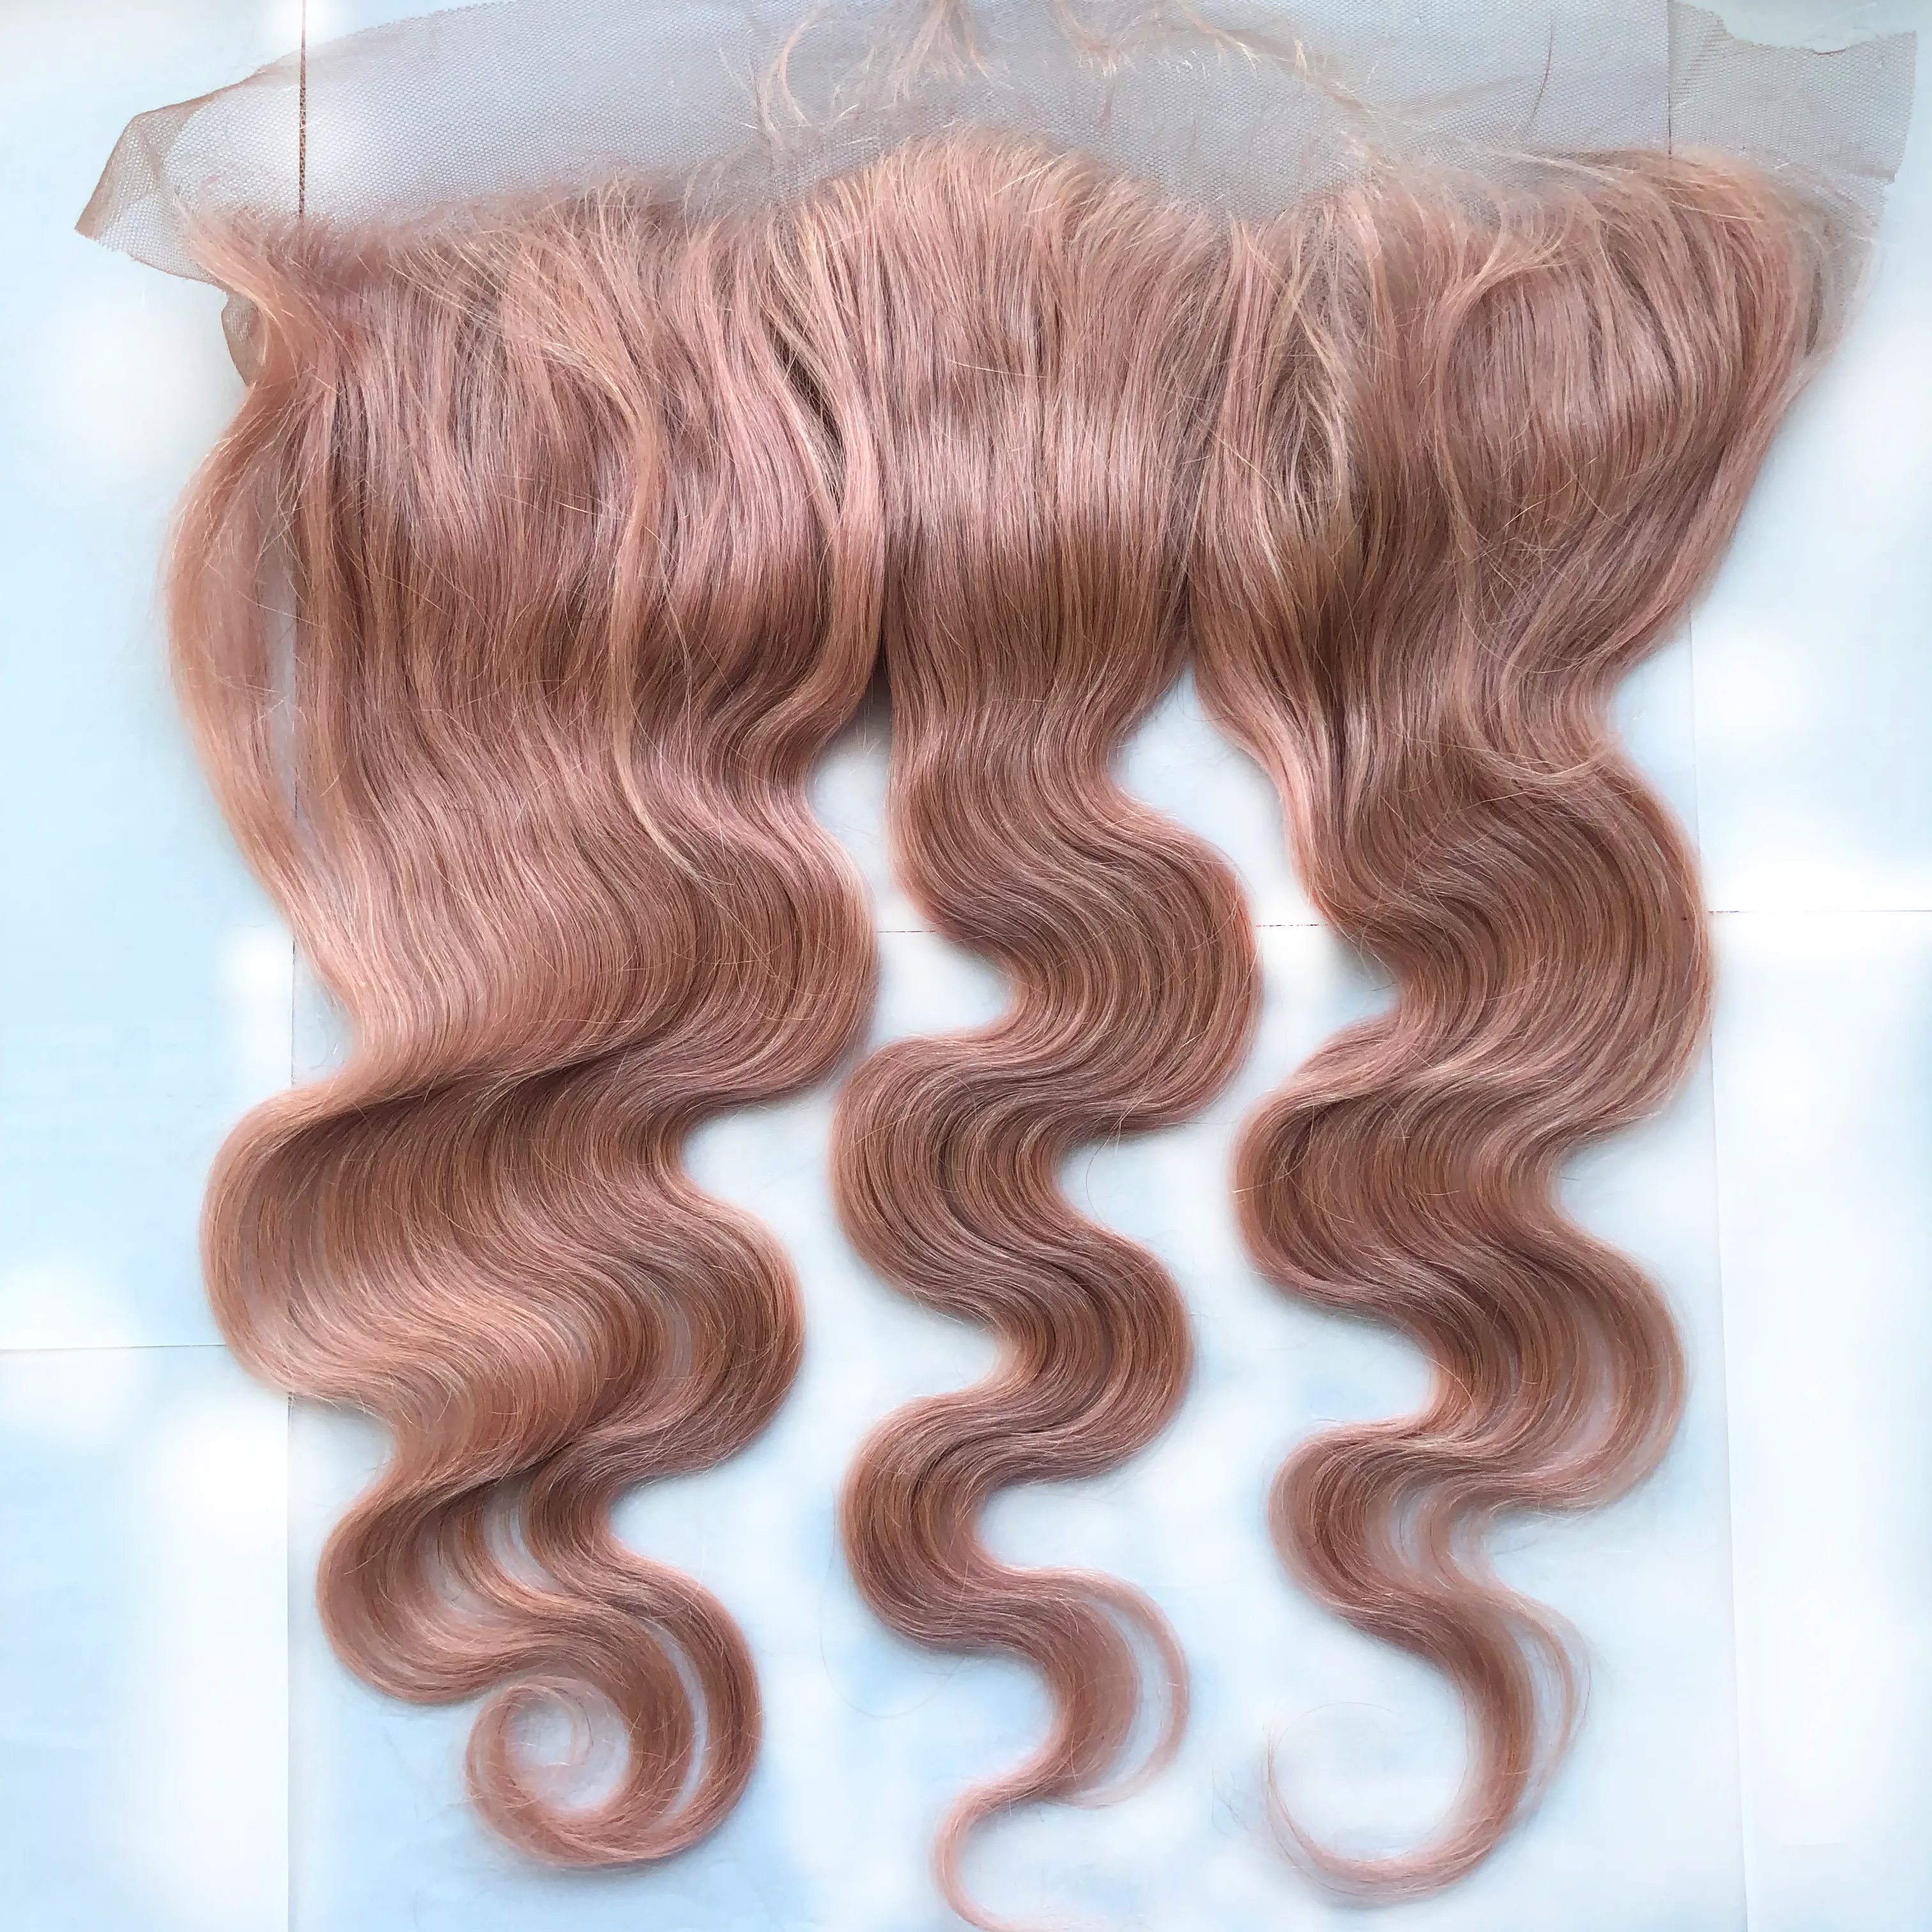 도매 가격 브라질 처녀 머리 정면 13x4 레이스 클로저와 미처리 100 % 인간의 머리카락 번들 핑크 # 바디 웨이브